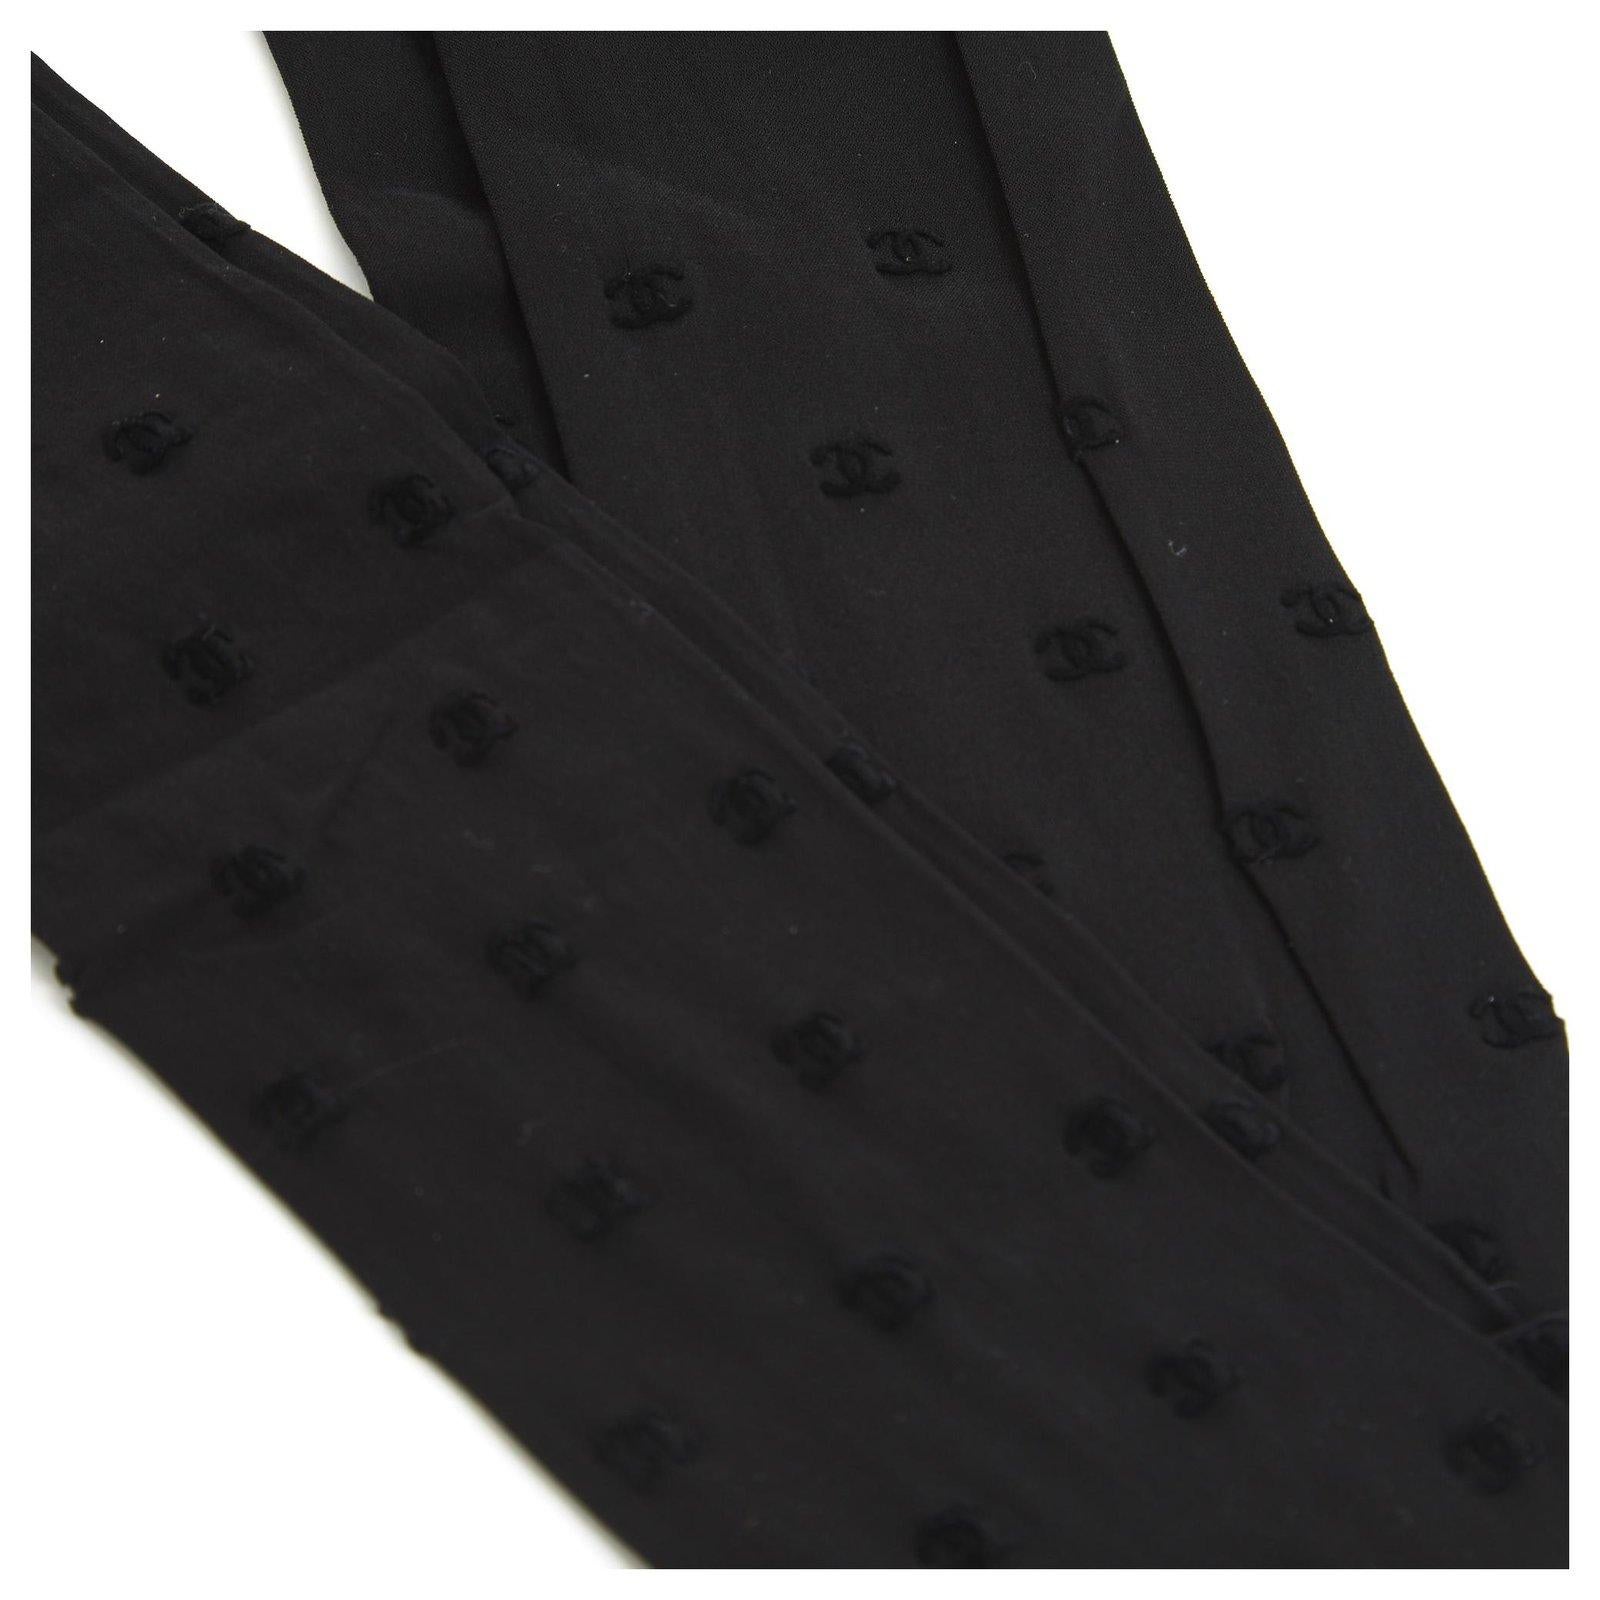 Collants noirs Chanel avec petits logos CC noirs, collection actuelle, taille M, parfaitement neufs, livrés dans leur emballage d'origine. Absolument pas trouvé...